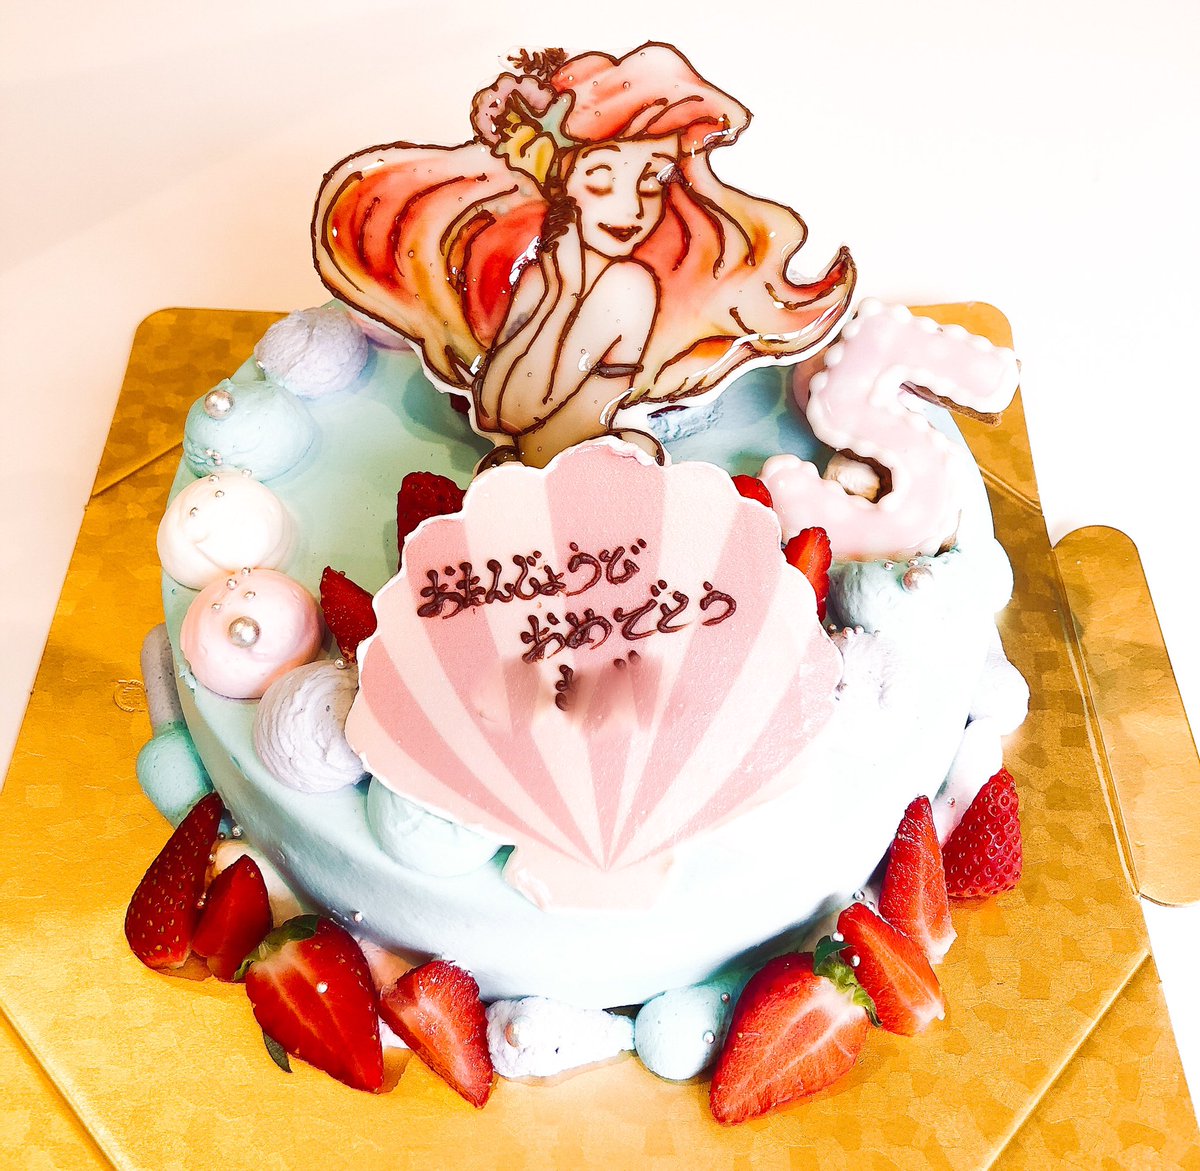 洋菓子の家ｍｉｍｉ ケーキの中からアリエル これは嬉しいお誕生日ケーキになりそうですね Mimi デコレーション ケーキ オリジナル